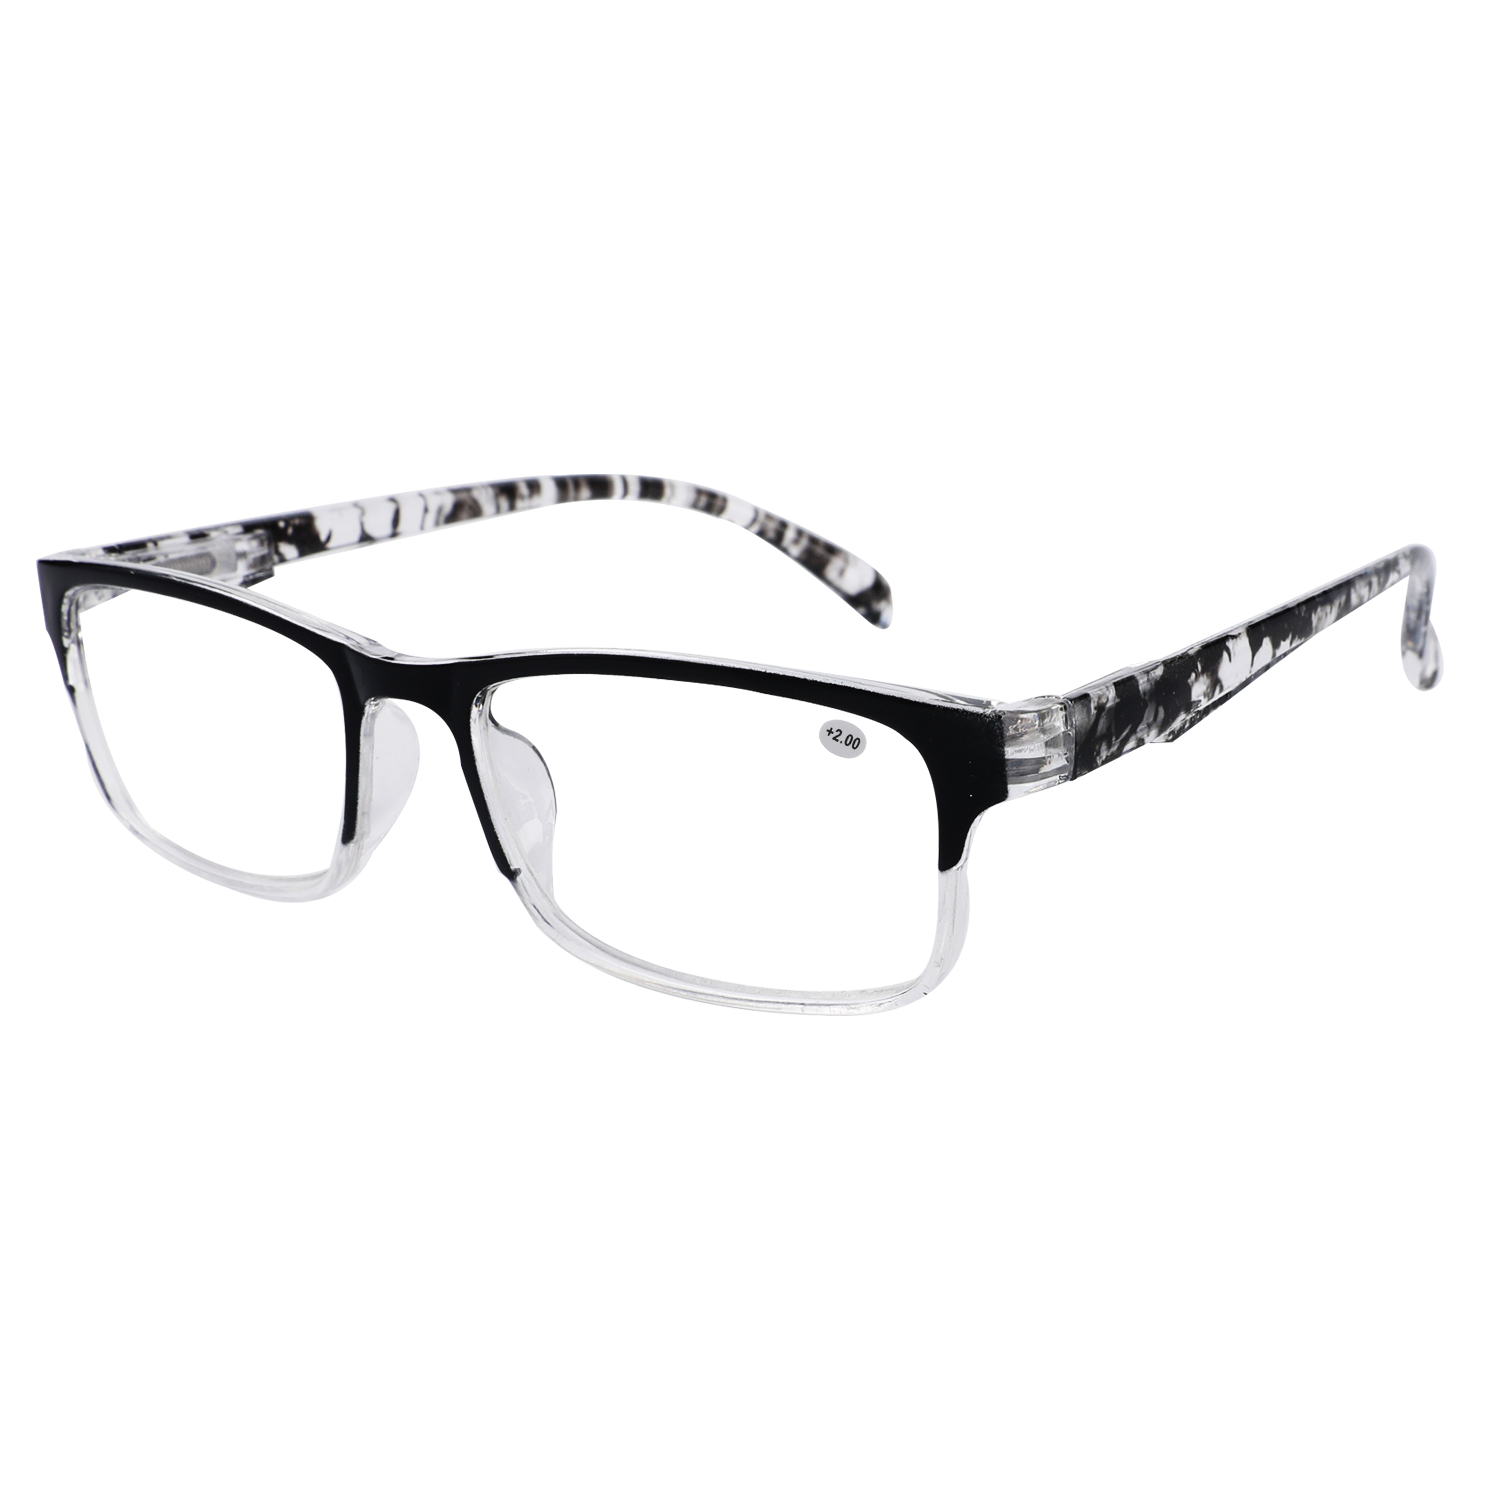 新款老花眼镜 欧美智能老人阅读镜男女通用款式美观佩戴697 8622